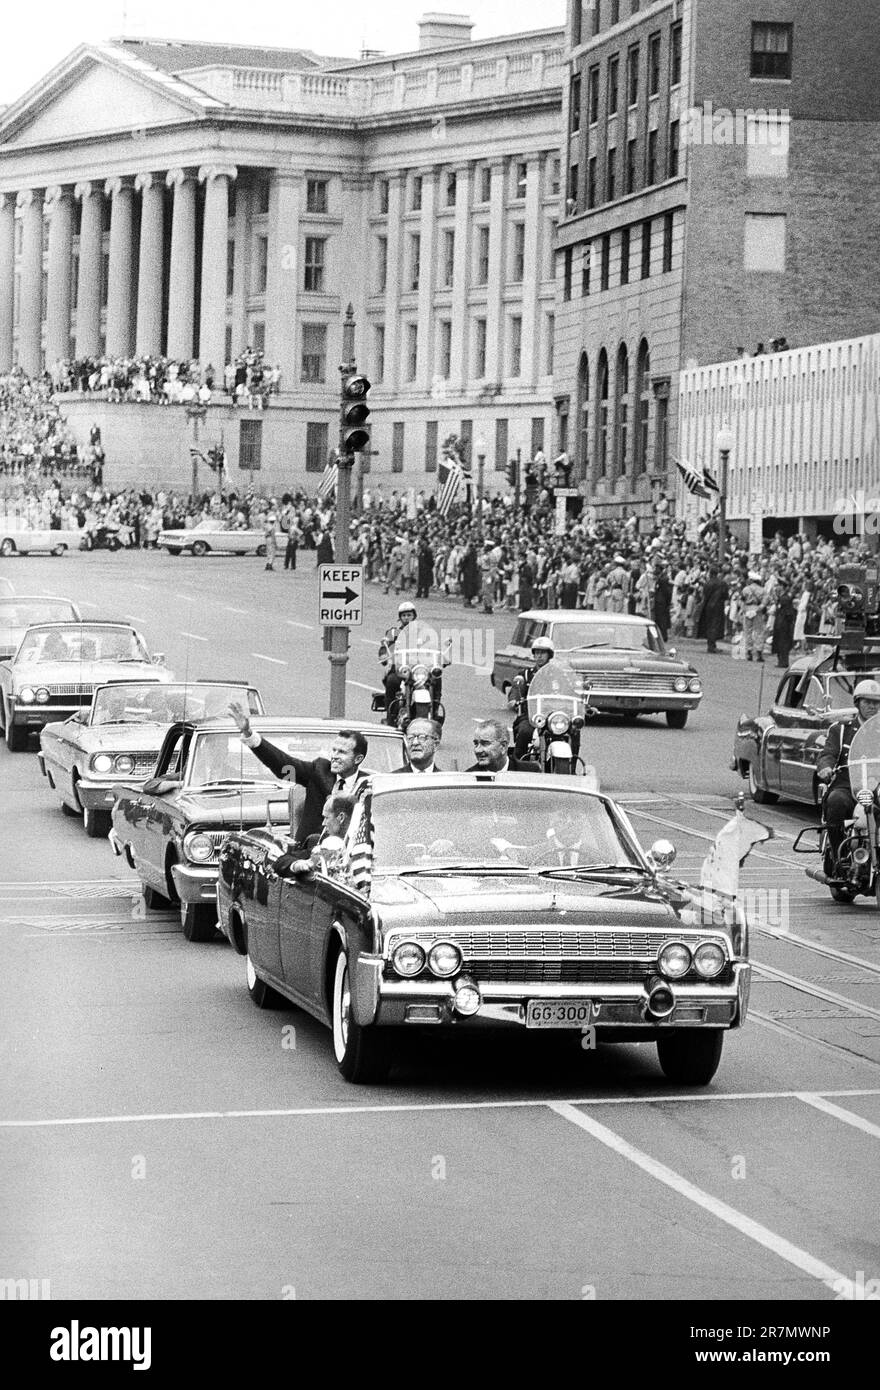 L'astronaute Gordon Cooper dans une voiture avec les États-Unis Vice-président Lyndon Baines Johnson pendant la parade, Washington, D.C., États-Unis, Warren K. Leffler, ÉTATS-UNIS Collection de photographies du magazine News & World Report, 21 mai 1963 Banque D'Images